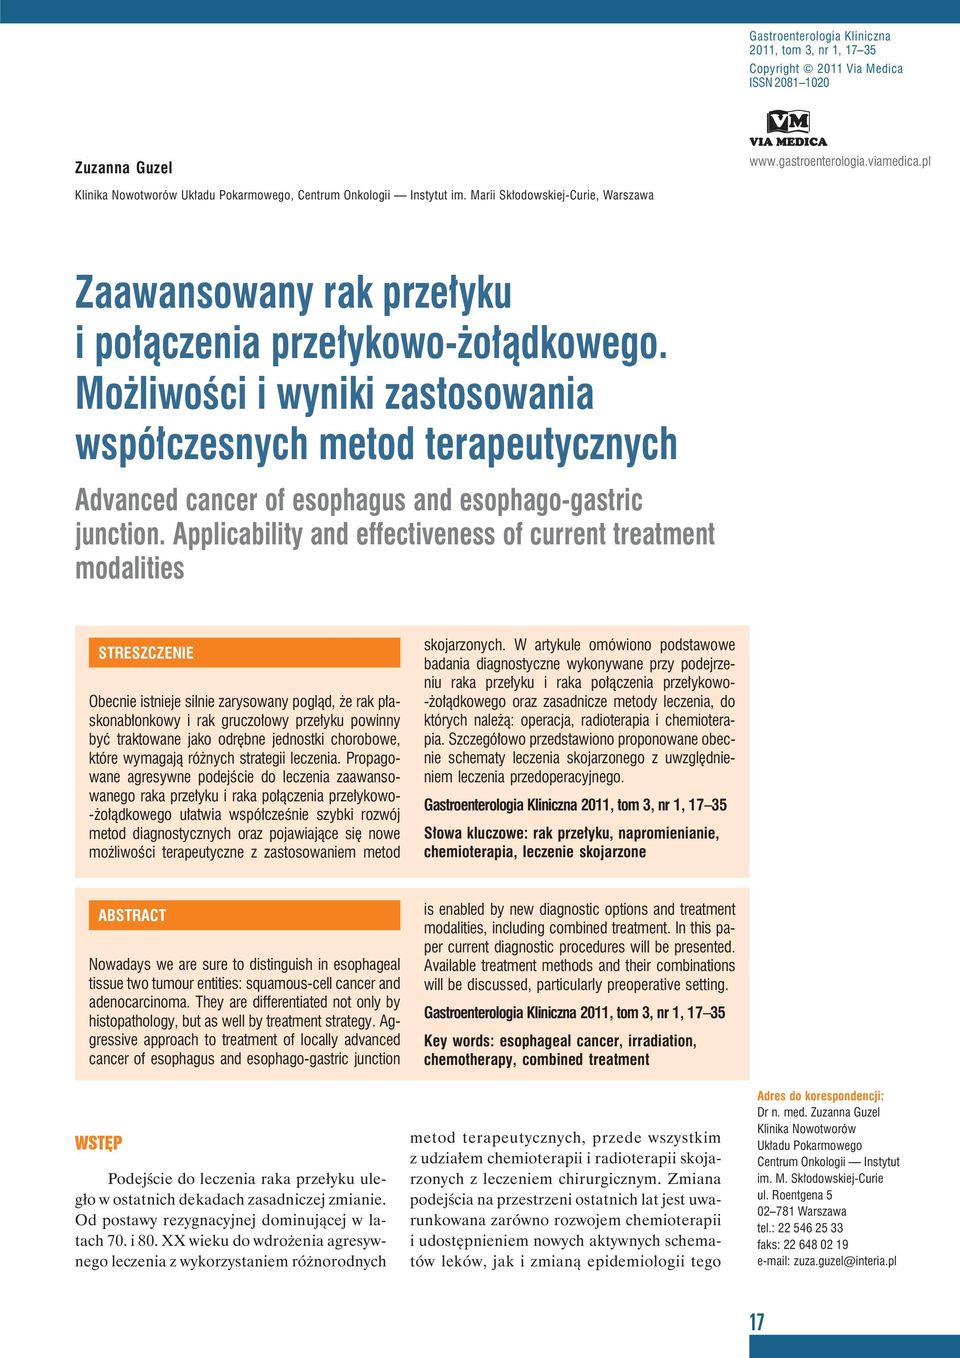 Możliwości i wyniki zastosowania współczesnych metod terapeutycznych Advanced cancer of esophagus and esophago-gastric junction.